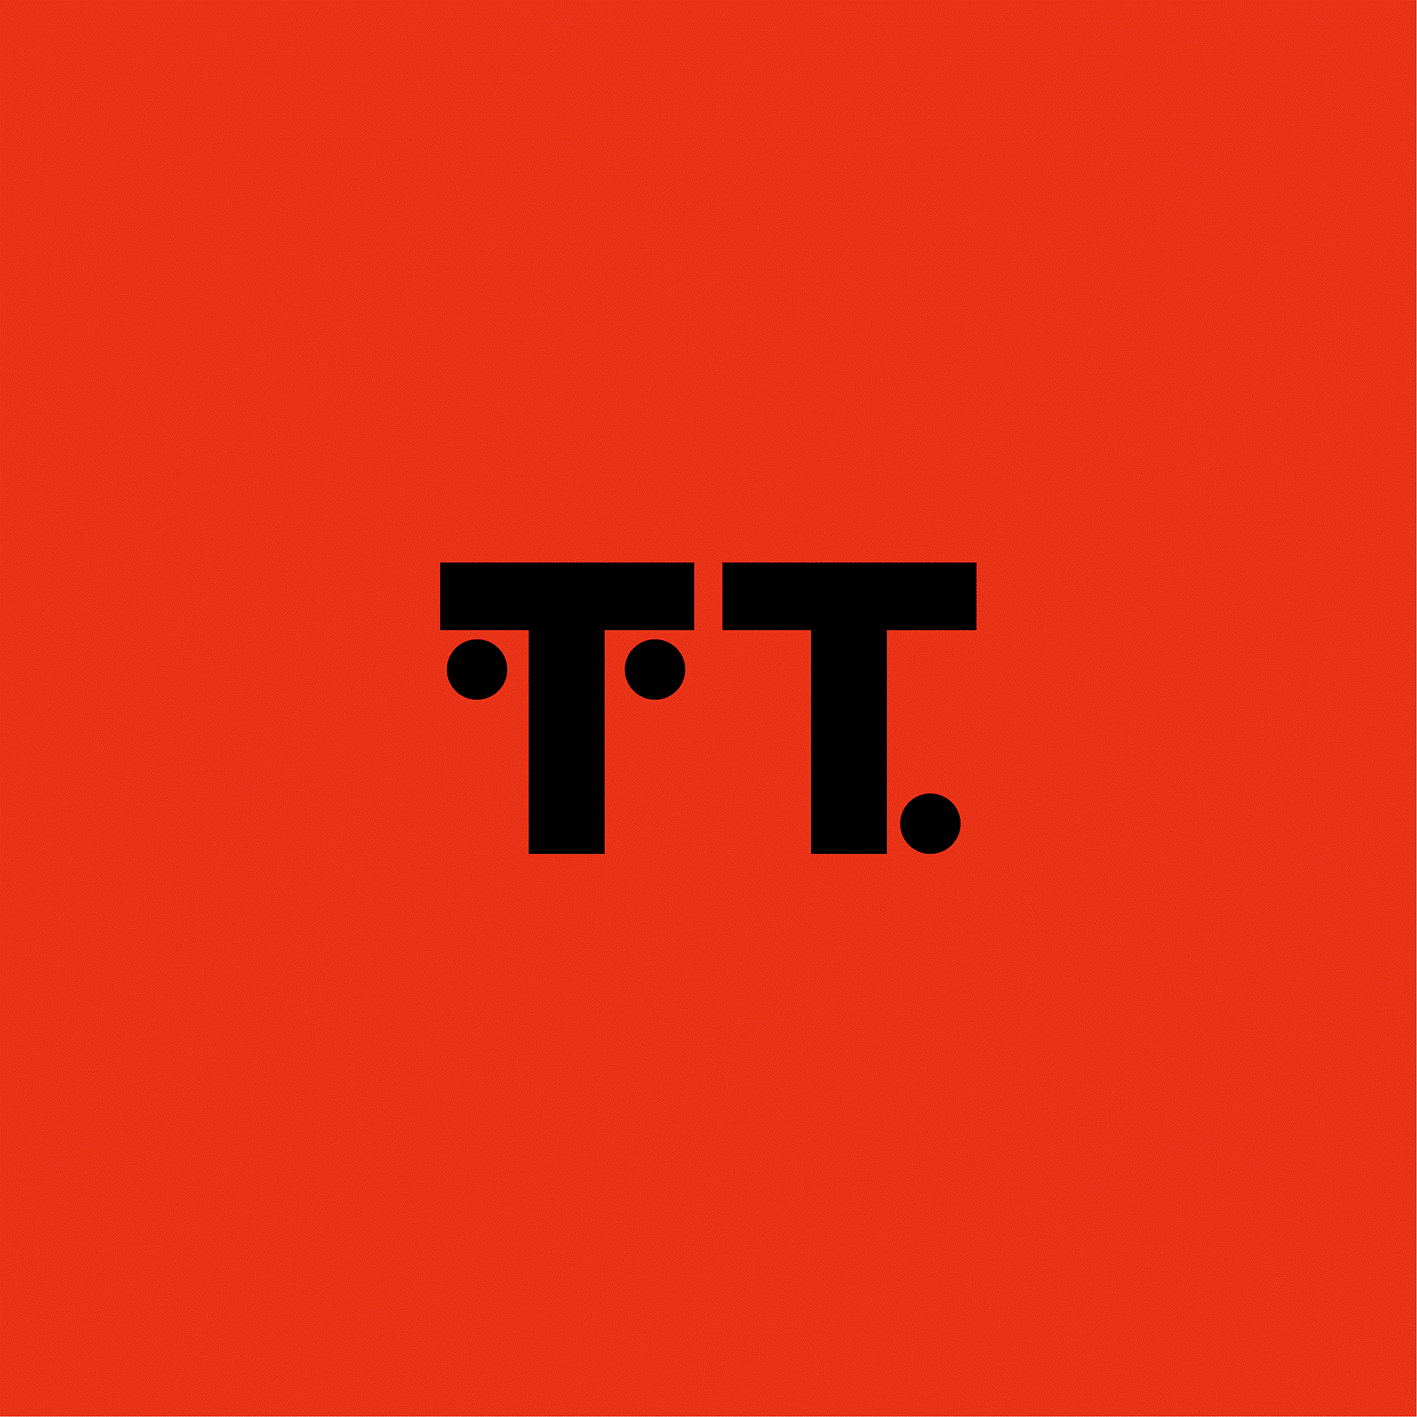 TT logo-01 m;ya